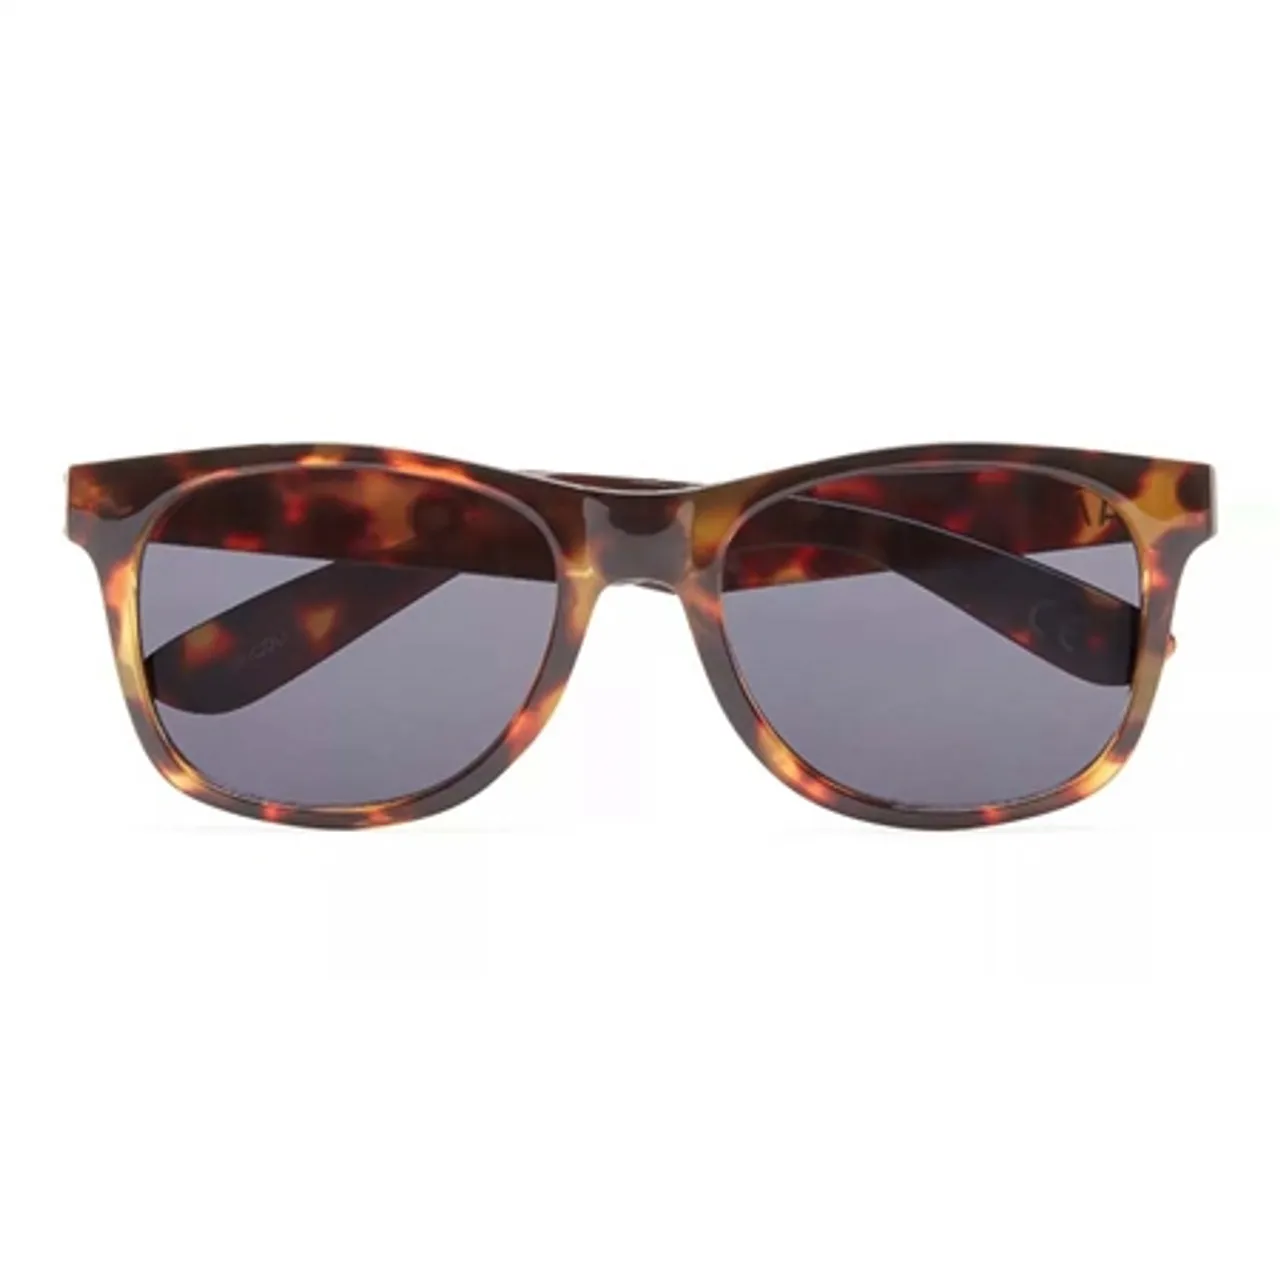 Vans Spicoli 4 Shades Sunglasses - Cheetah Tortoise